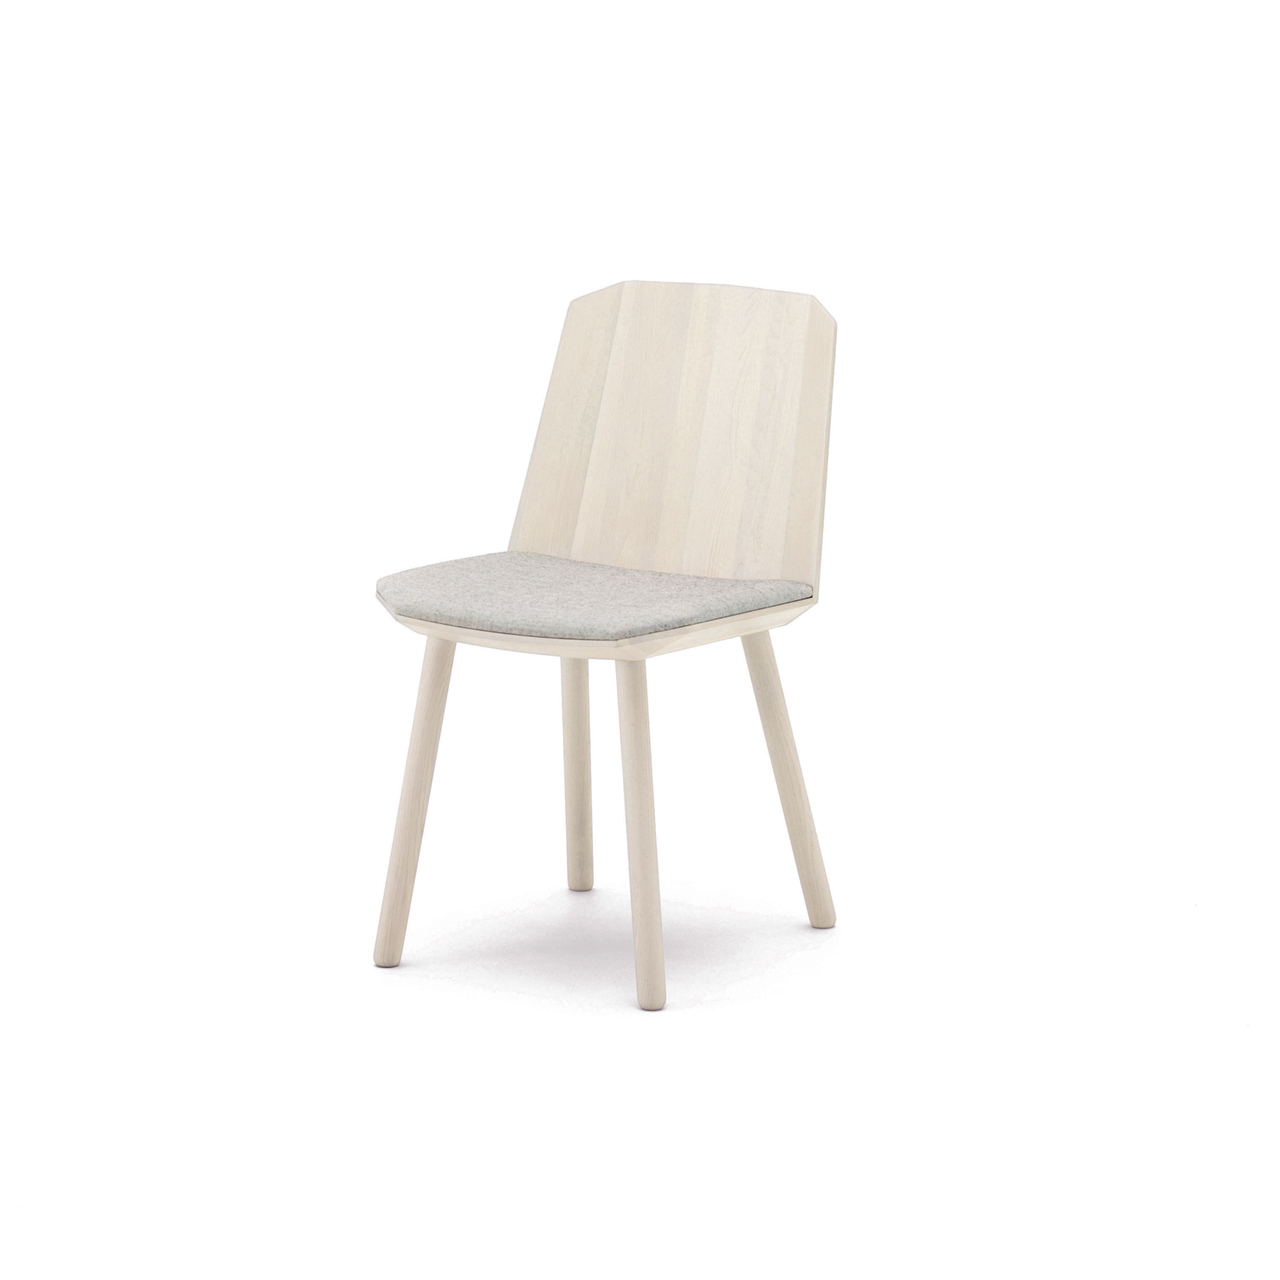 Colour Wood Sidechair ‒ KARIMOKU NEW STANDARD (KNS)